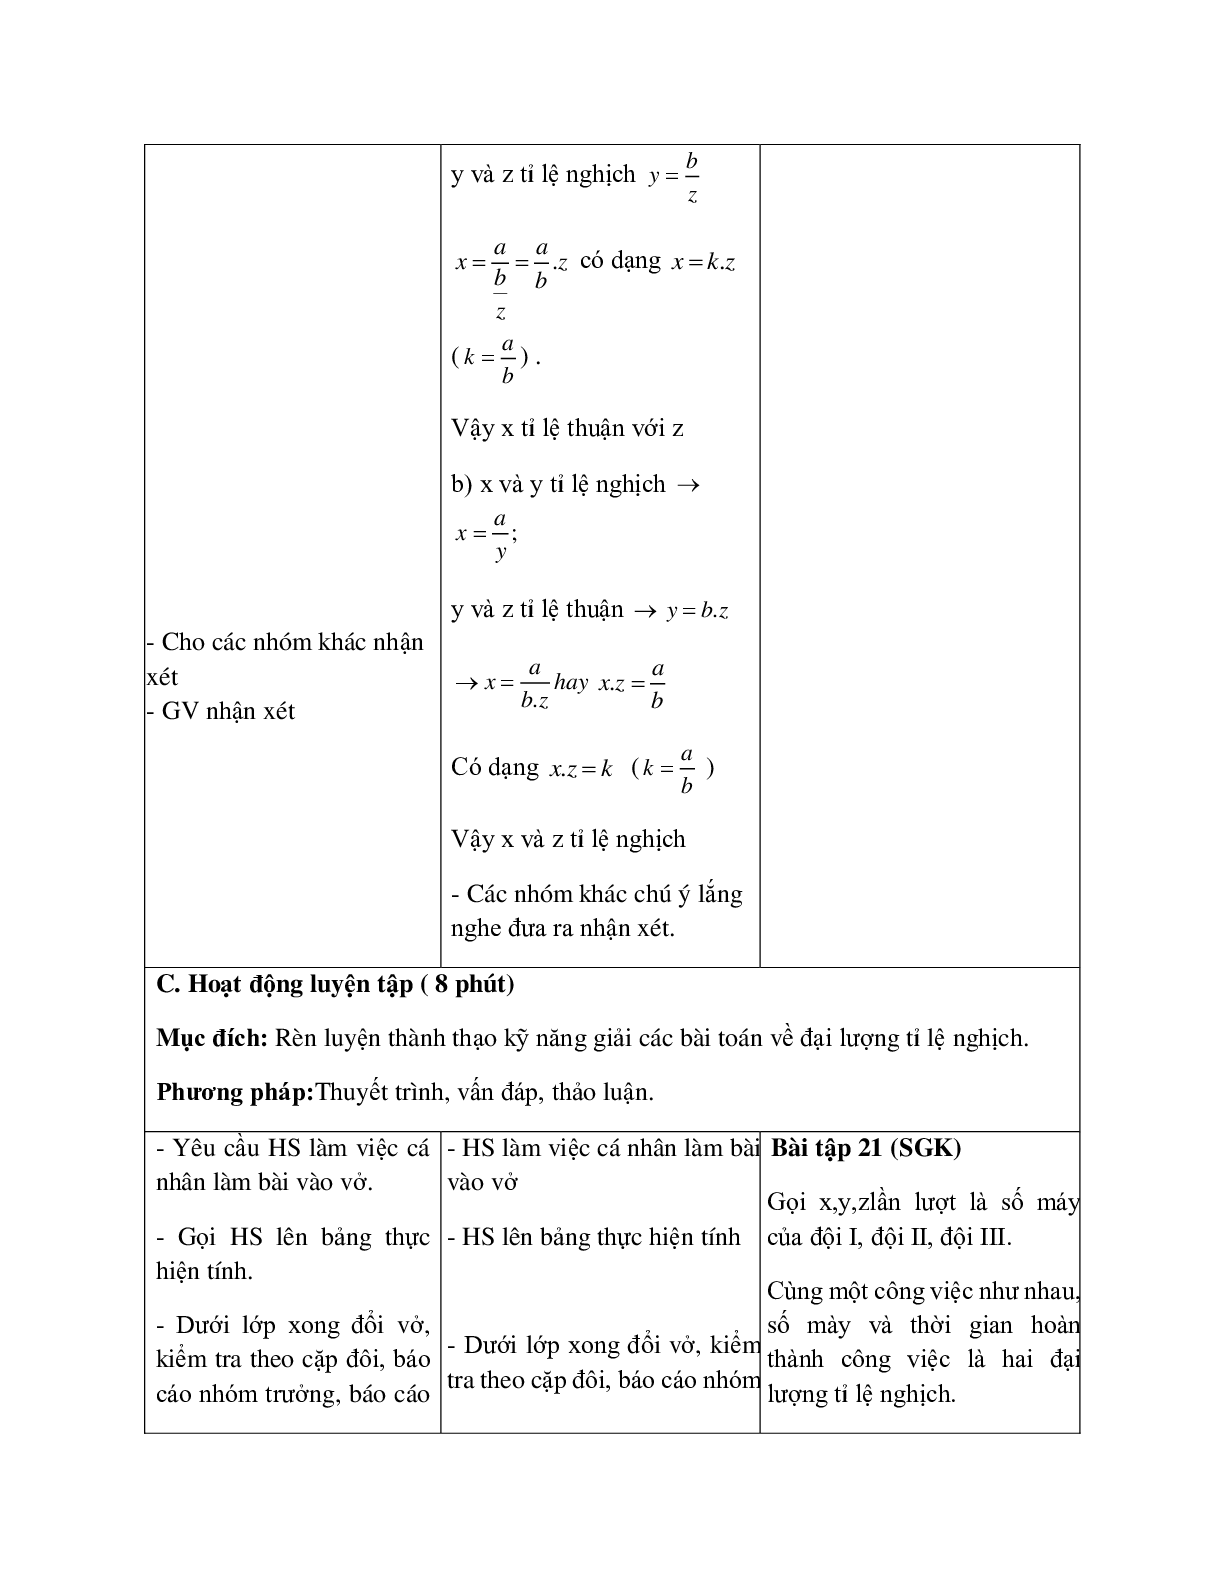 Giáo án Toán học 7 bài 4: Một số bài toán về đại lượng tỉ lệ nghịch (tiếp theo) hay nhất (trang 4)